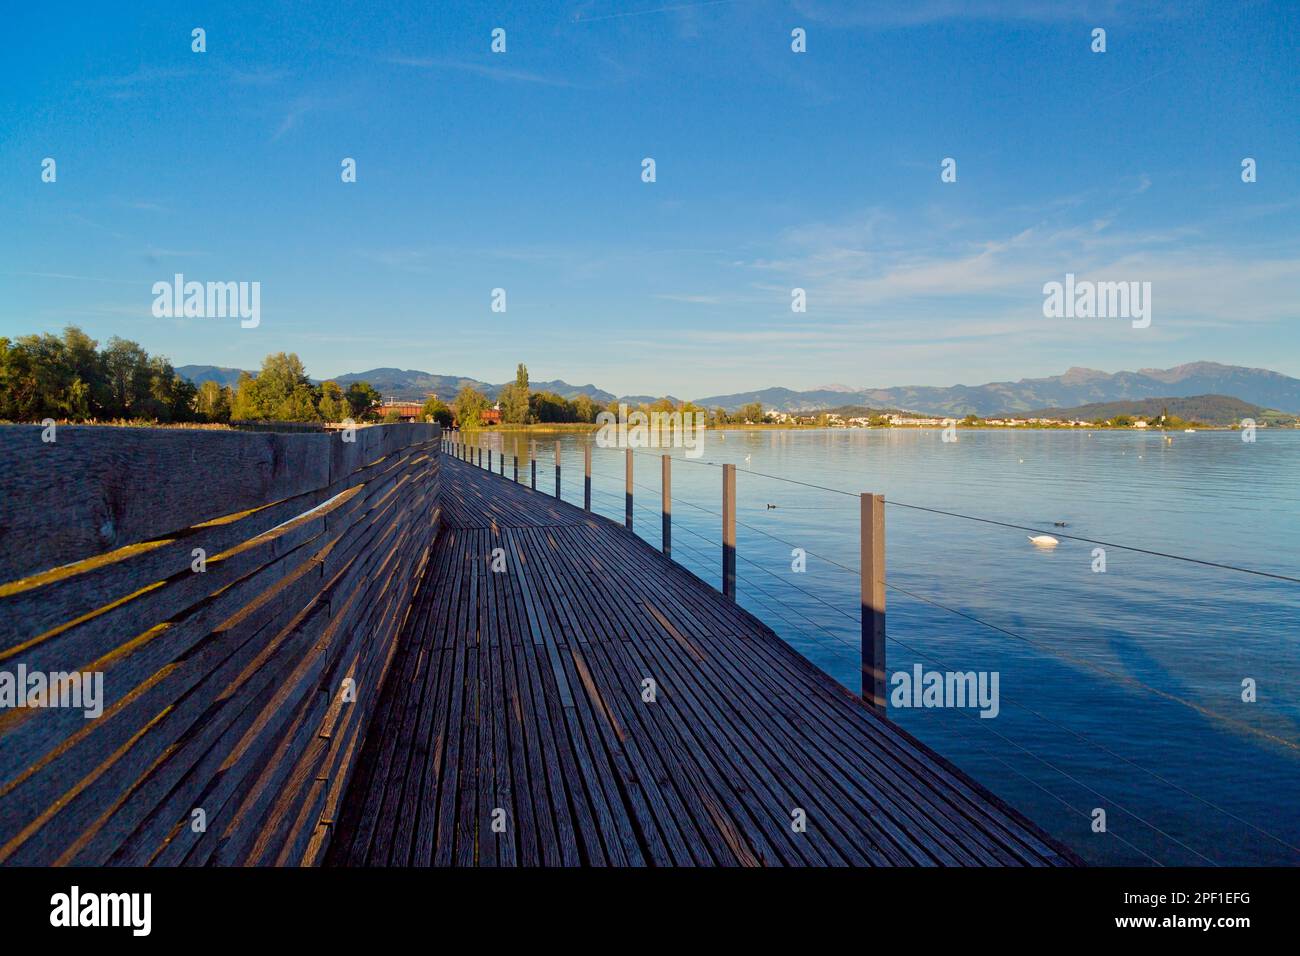 Rapperswil-Jona on Lake Zurich, Switzerland Stock Photo